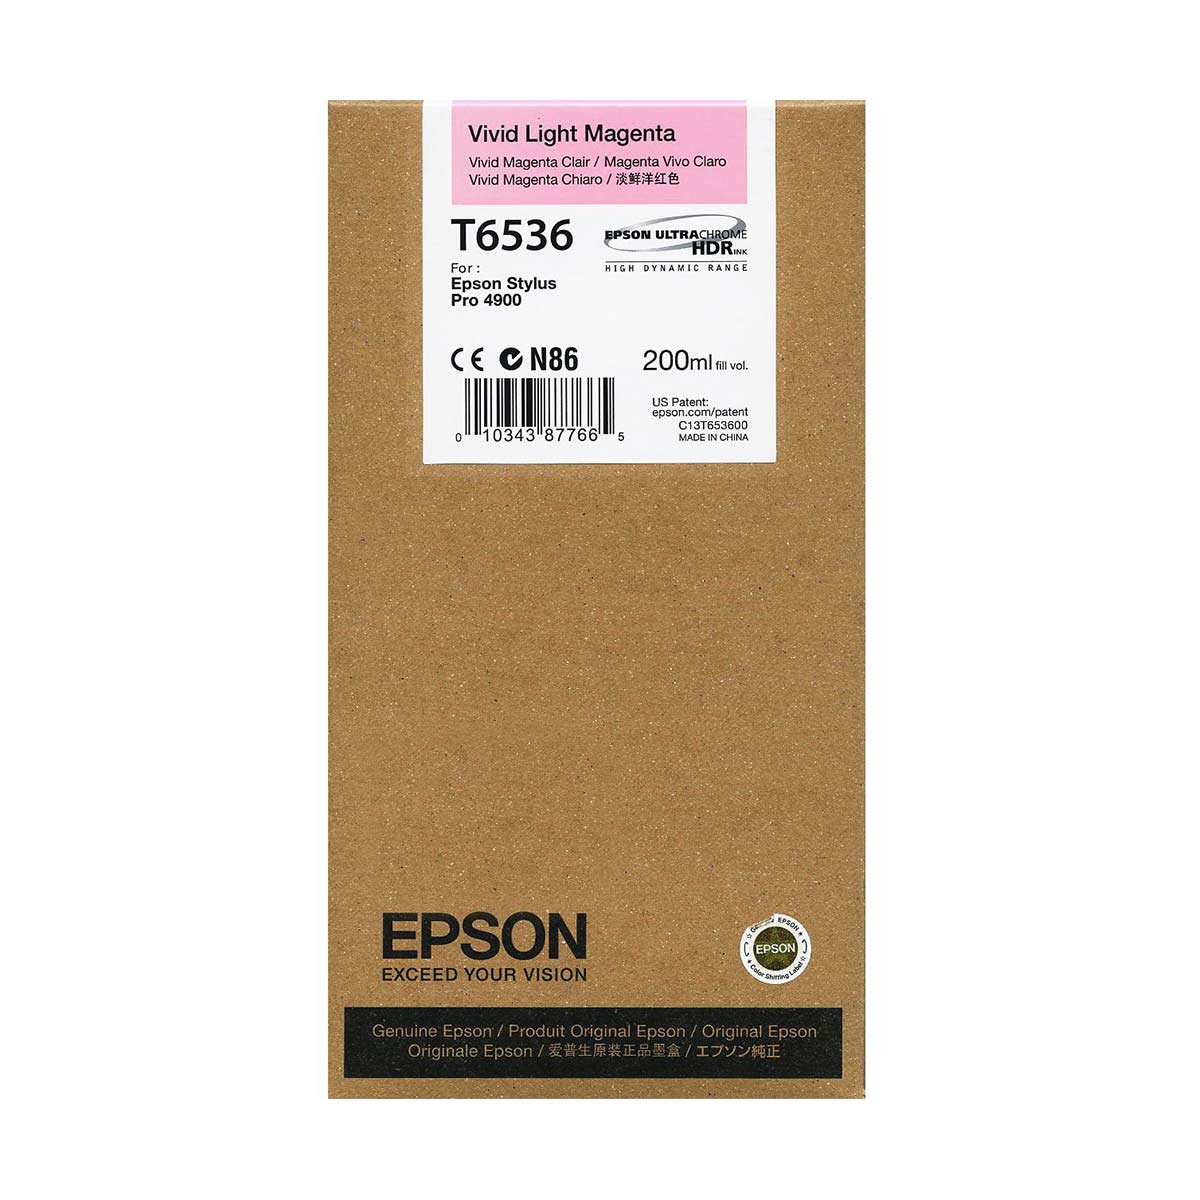 Epson T6536 4900 Ultrachrome Ink HDR 200ml Vivid Light Magenta